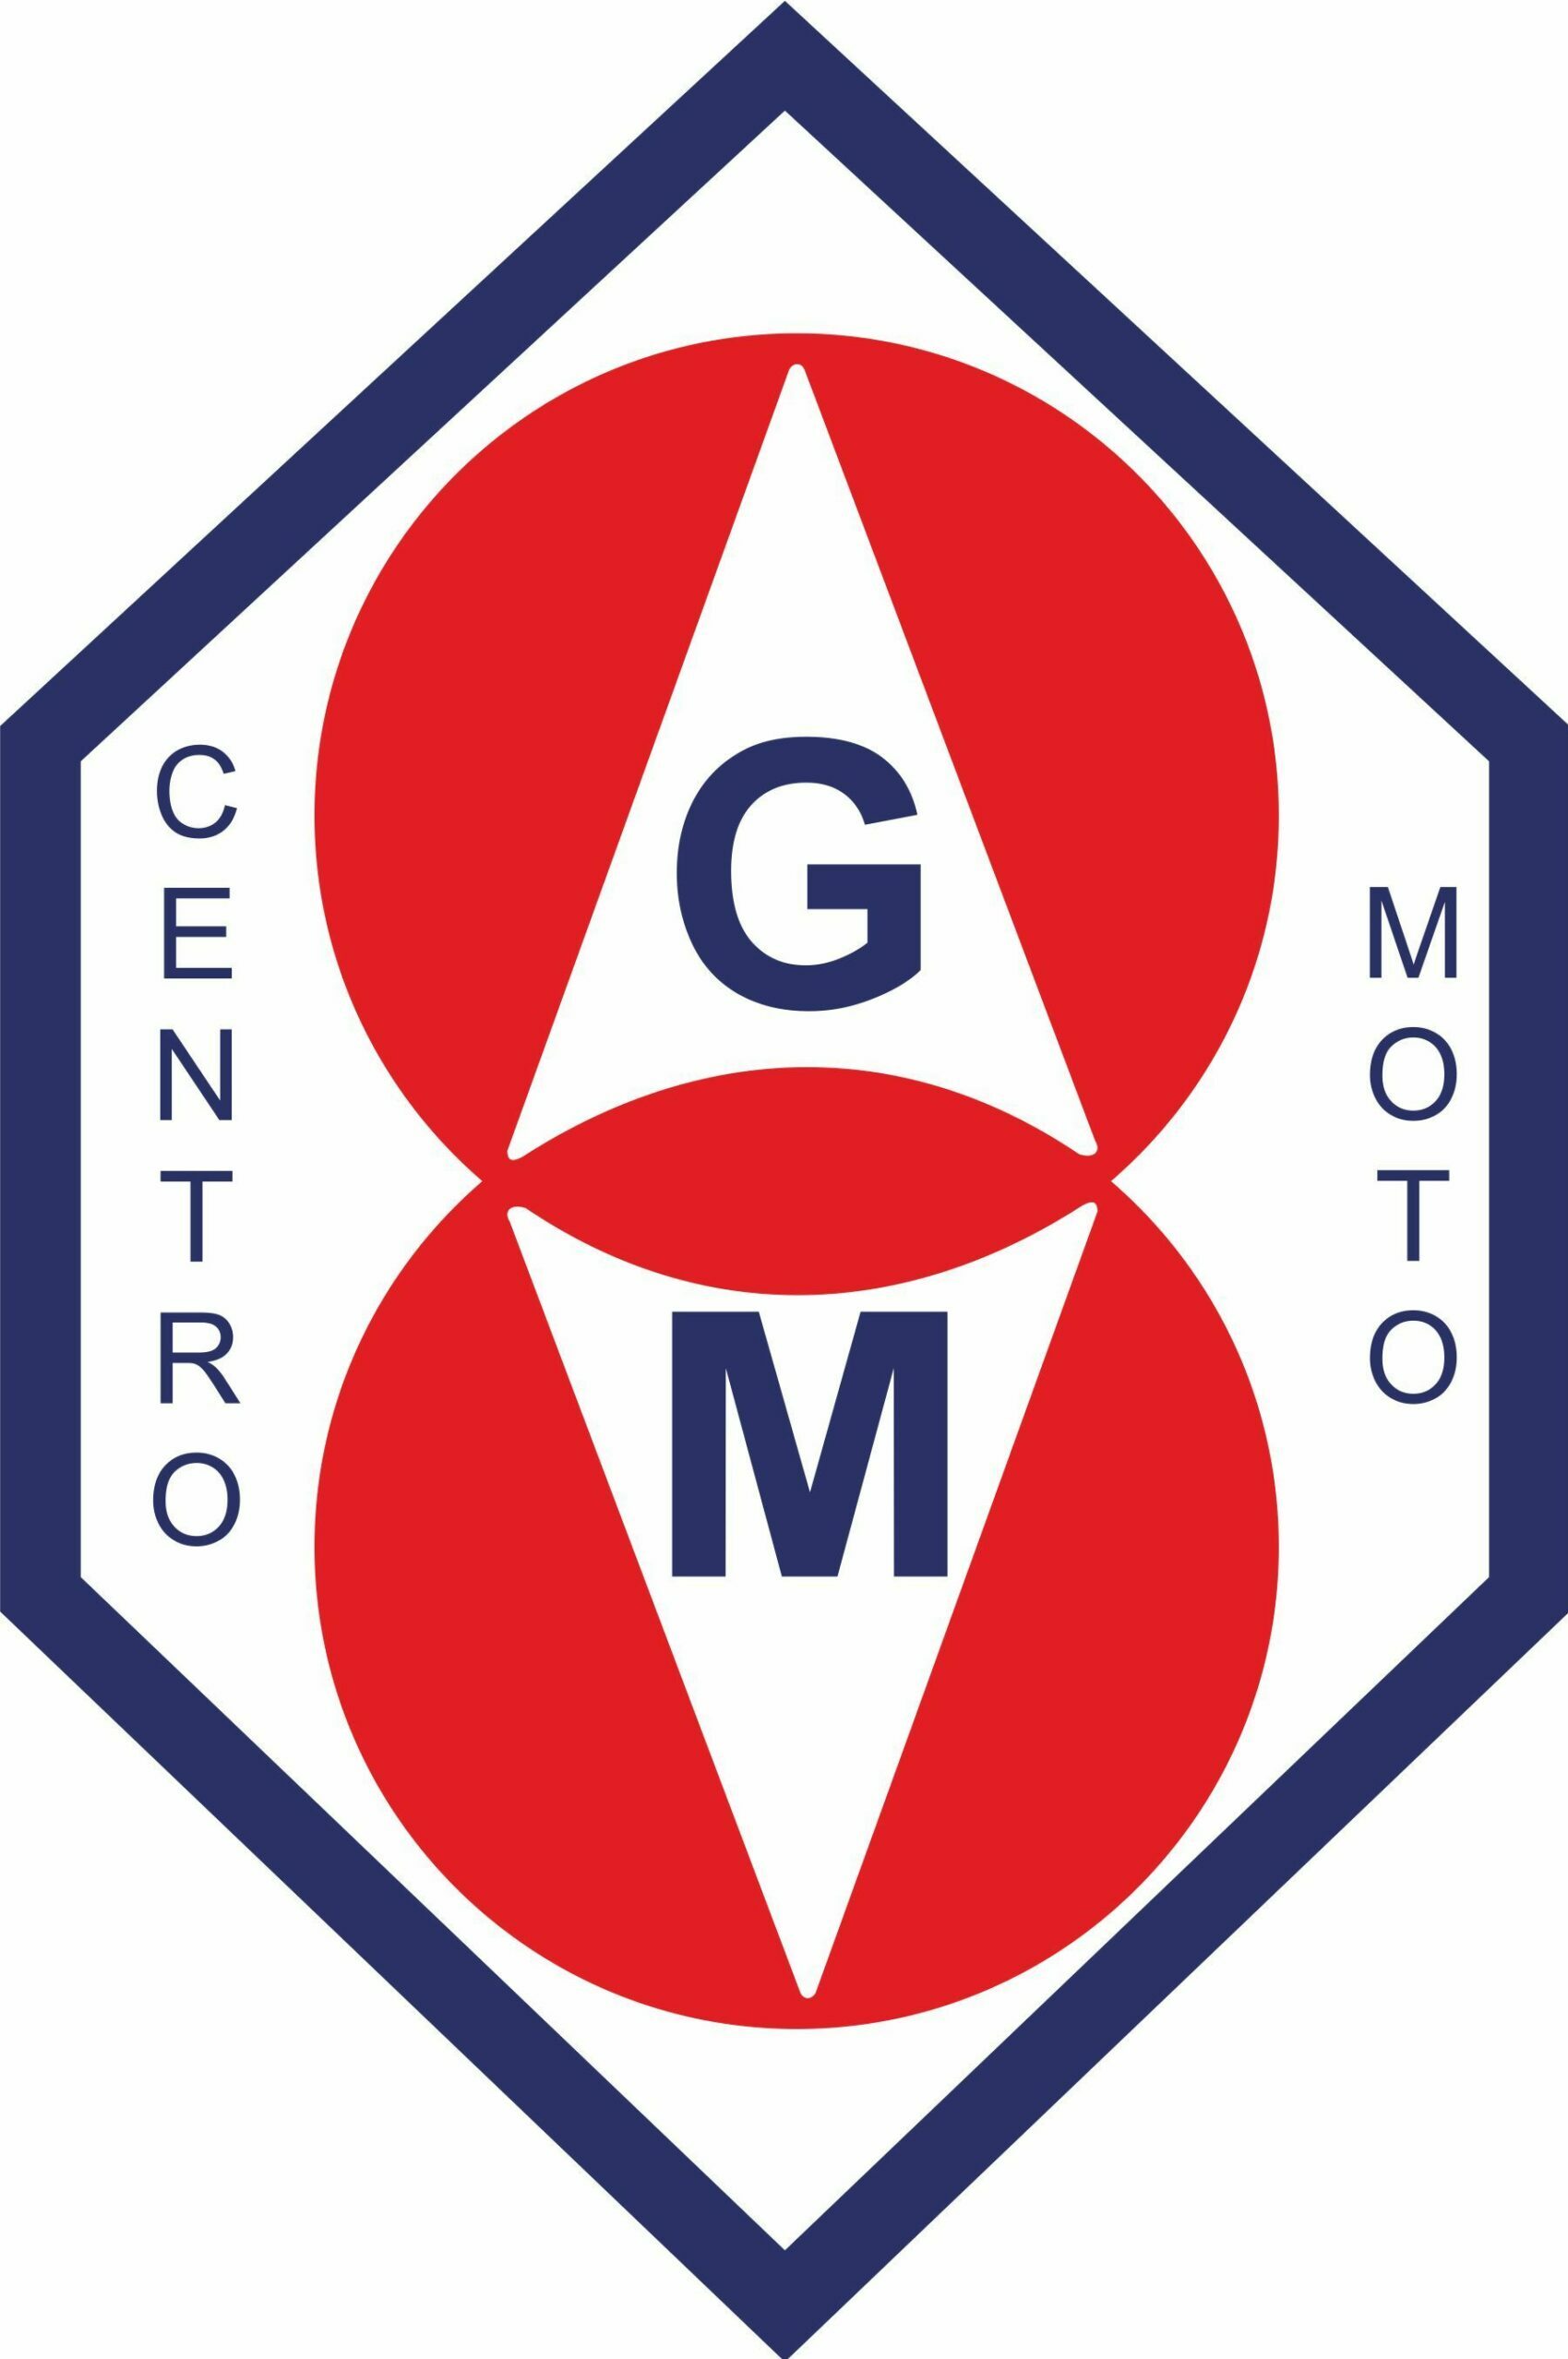 CentroMoto GM Scatena l'avventura con i nostri veivoli elettrici